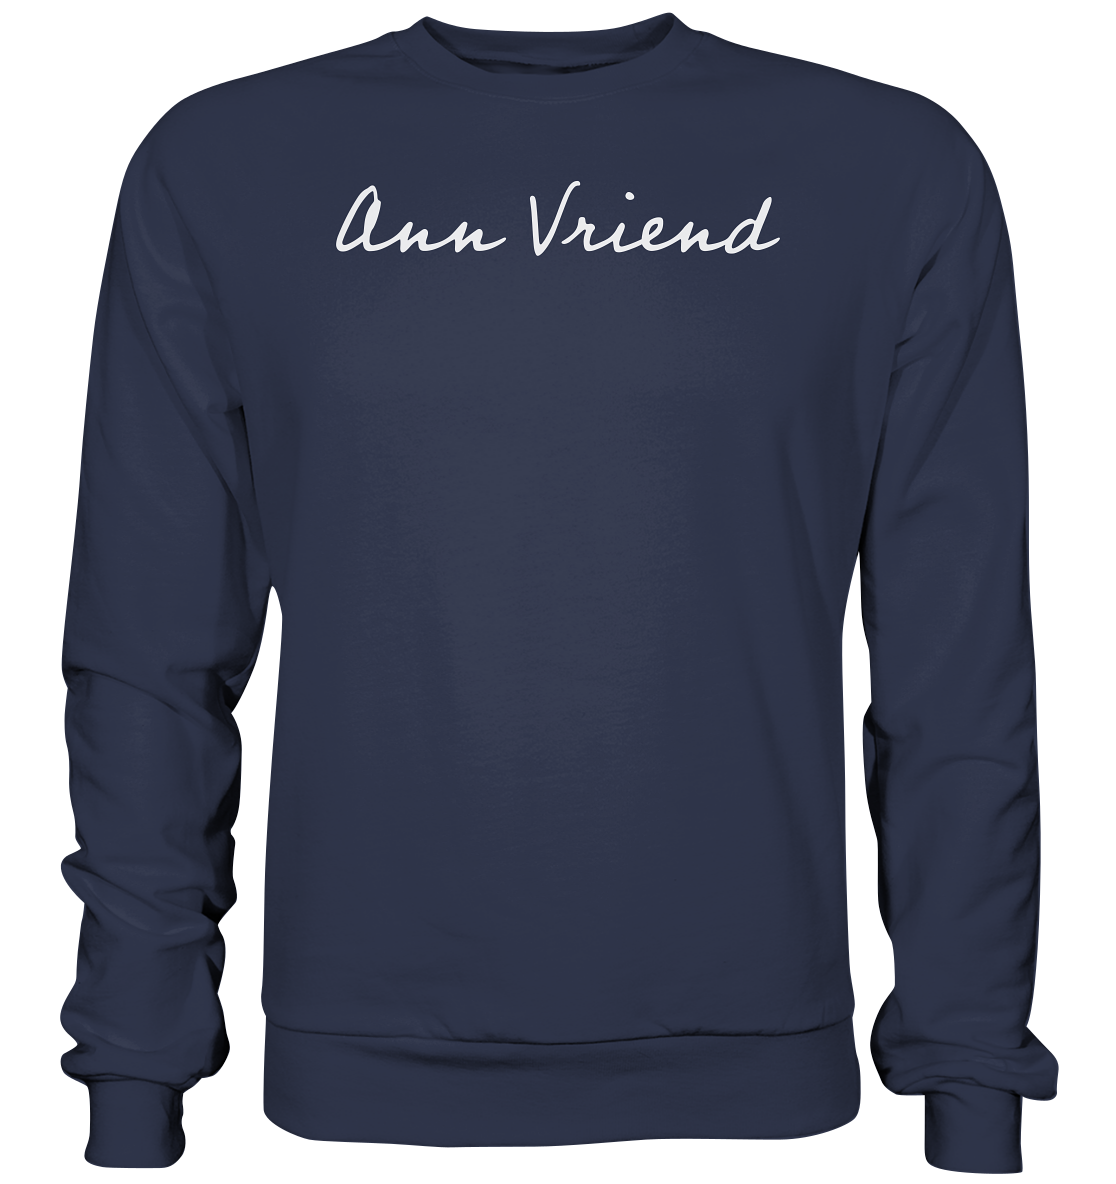 AV / Premium Sweatshirt with Handwriting